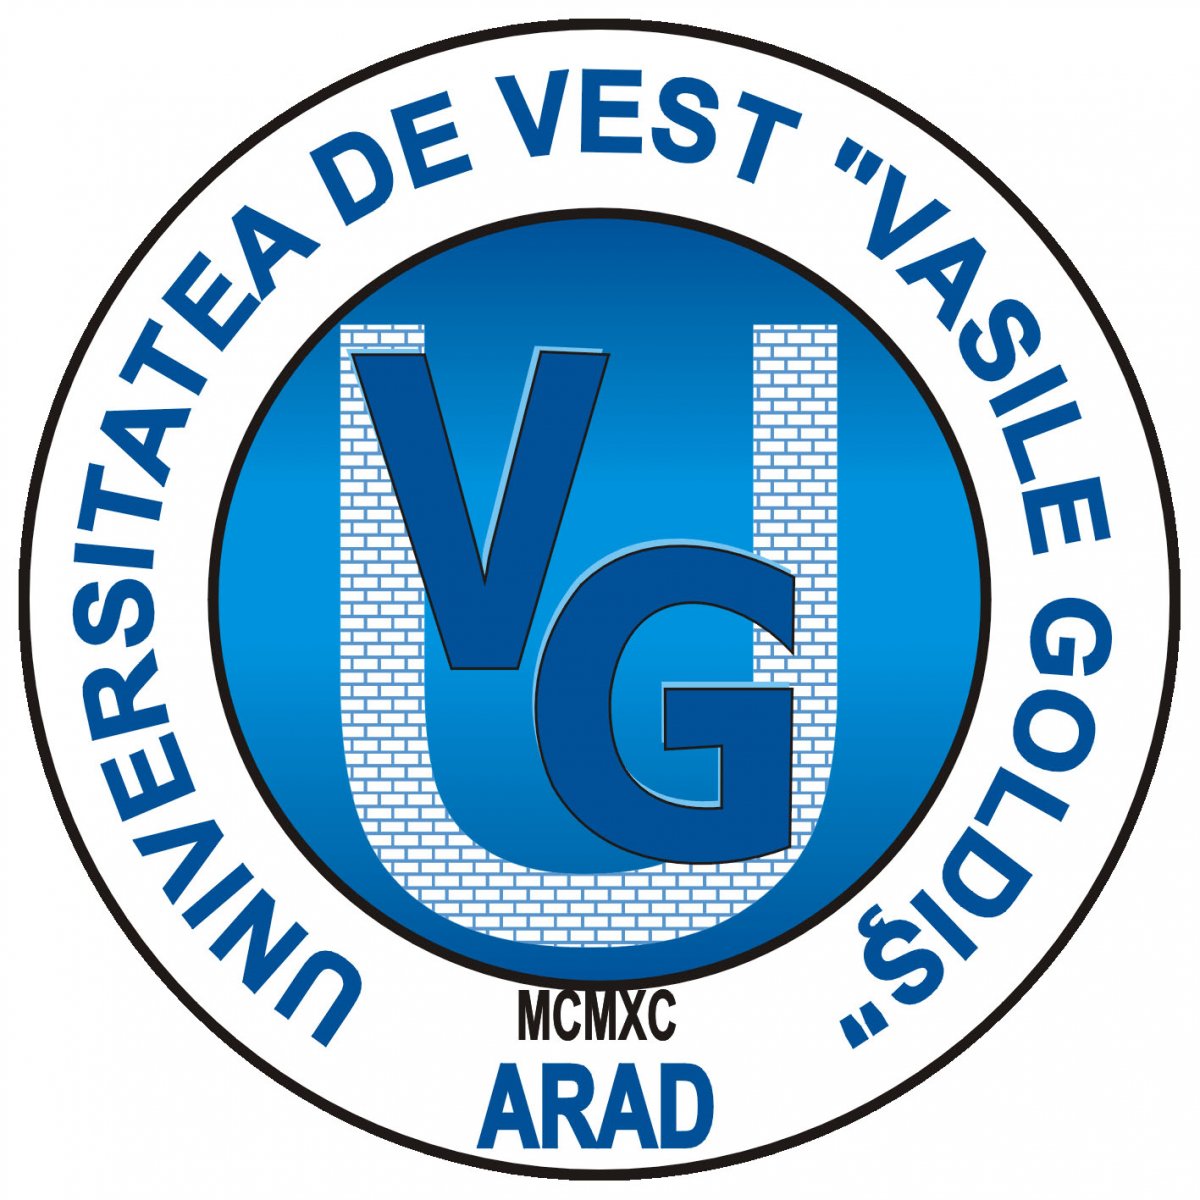 Cercetare ştiinţifică internaţională, în cadrul Zilelor Academice Arădene ediţia a XXVII-a organizate de Universitatea de Vest „Vasile Goldiş” din Arad